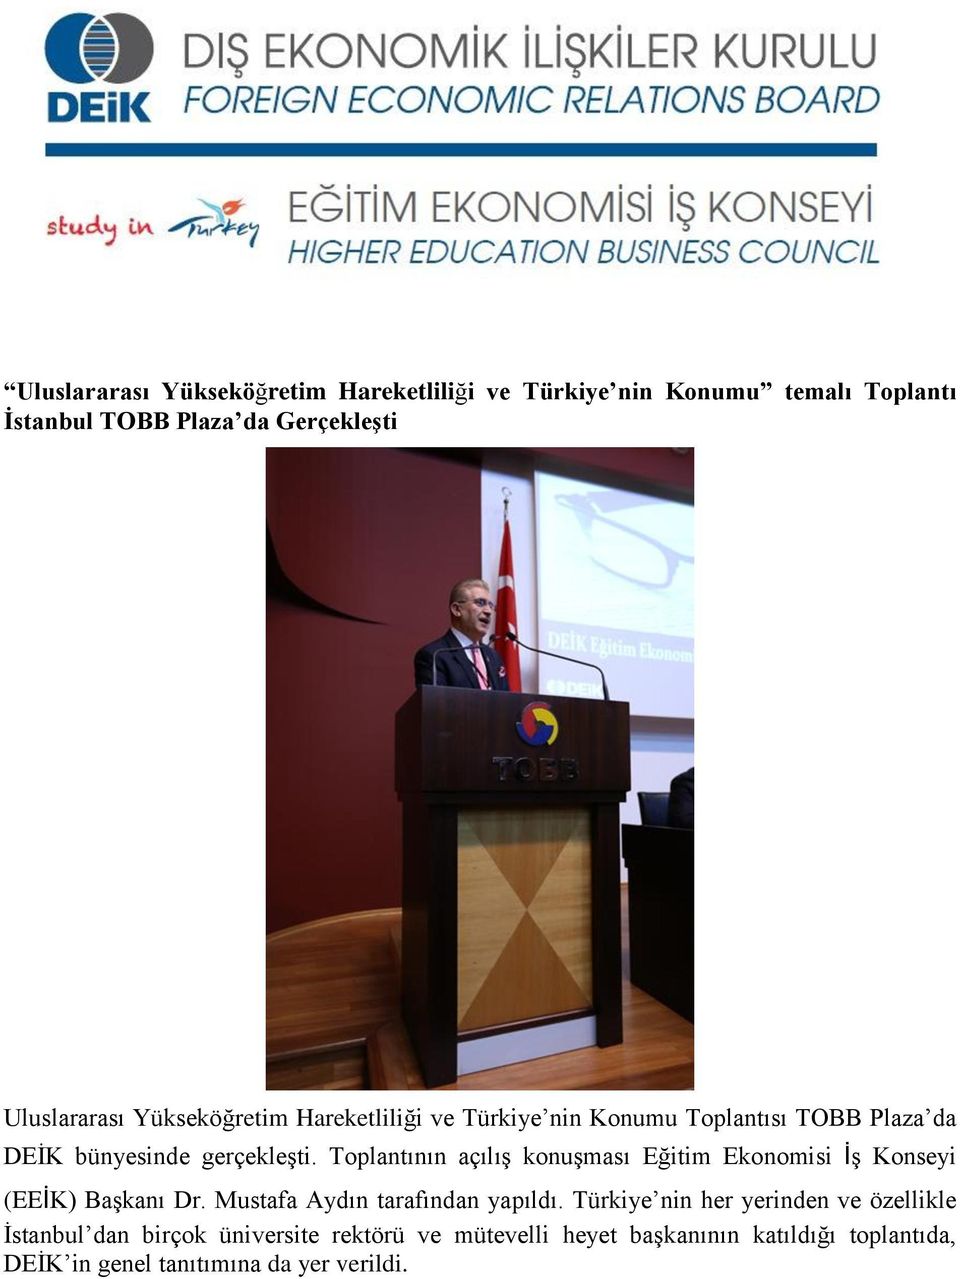 Toplantının açılış konuşması Eğitim Ekonomisi İş Konseyi (EEİK) Başkanı Dr. Mustafa Aydın tarafından yapıldı.